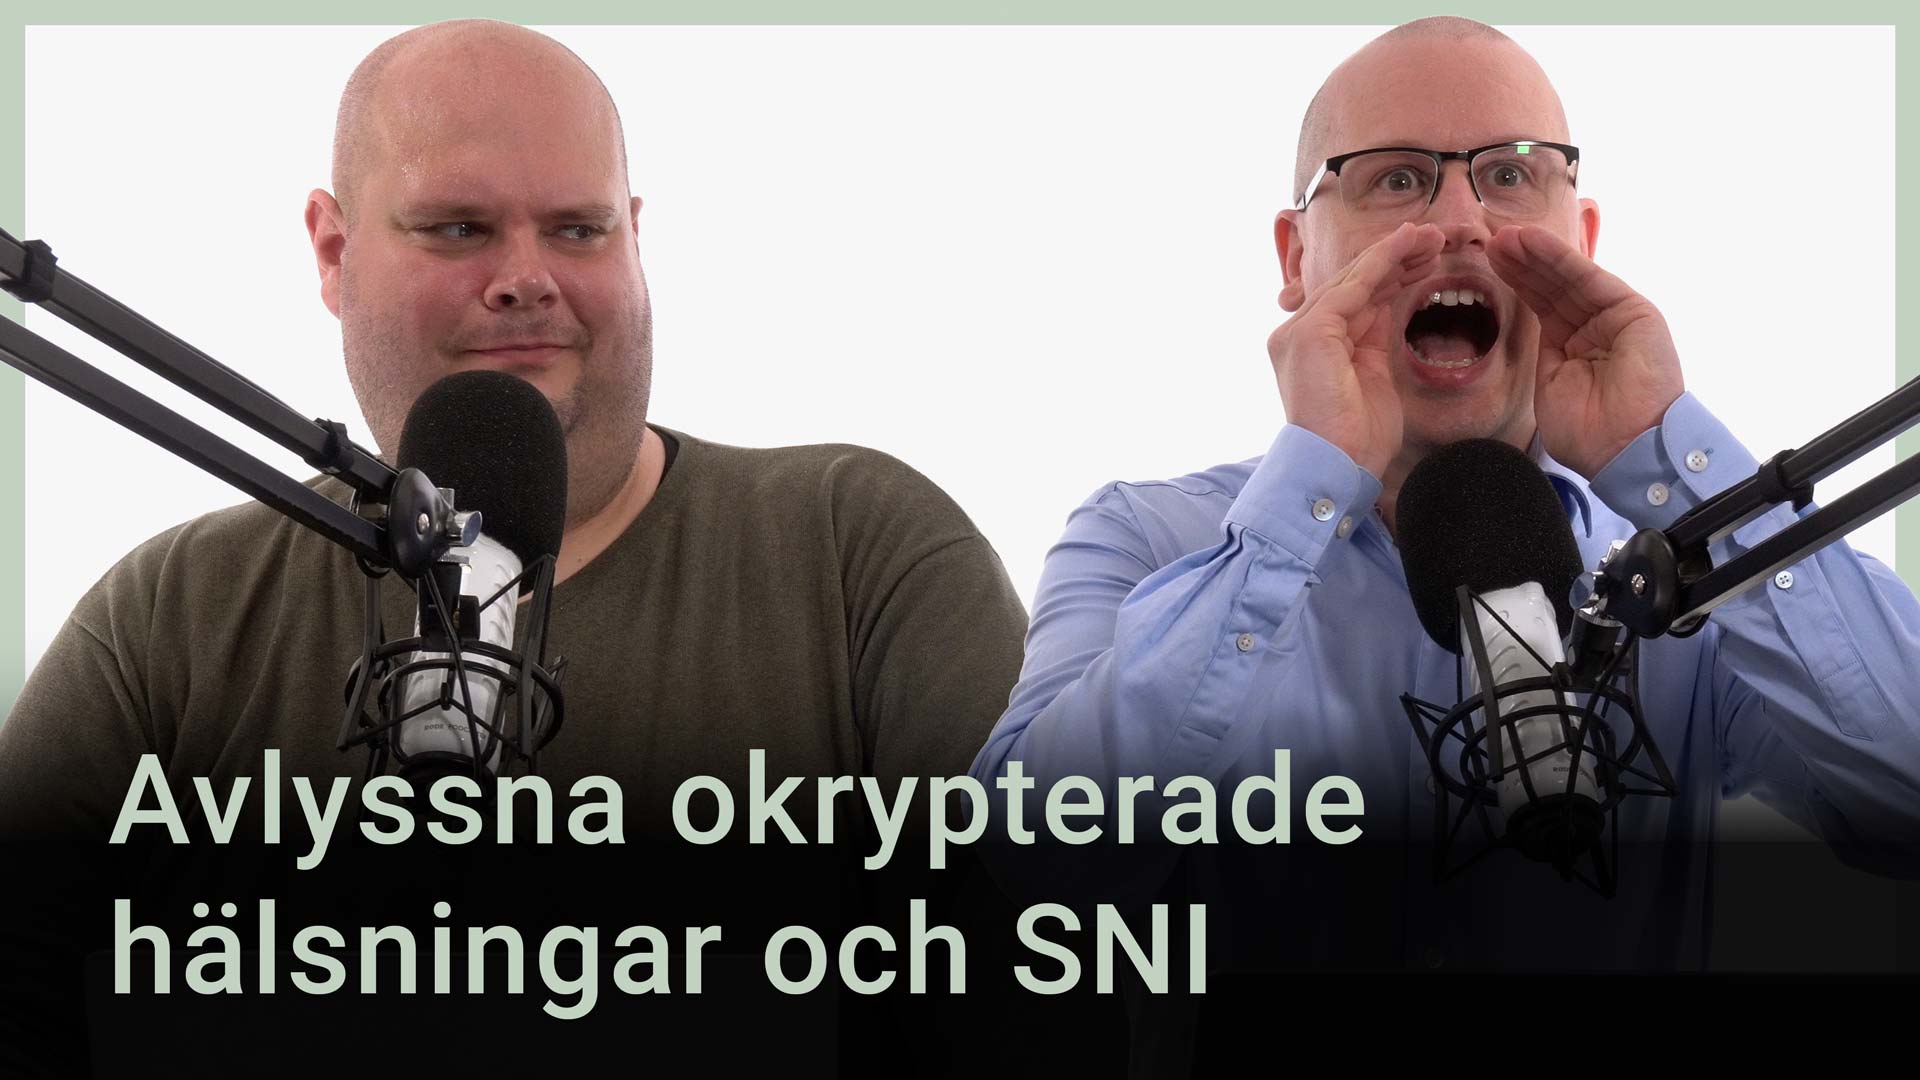 Peter Esse och Karl Emil Nikka står vid sina mikrofoner. Texten ”Avlyssna okrypterade hälsningar och SNI” är tryckt ovanpå bilden.